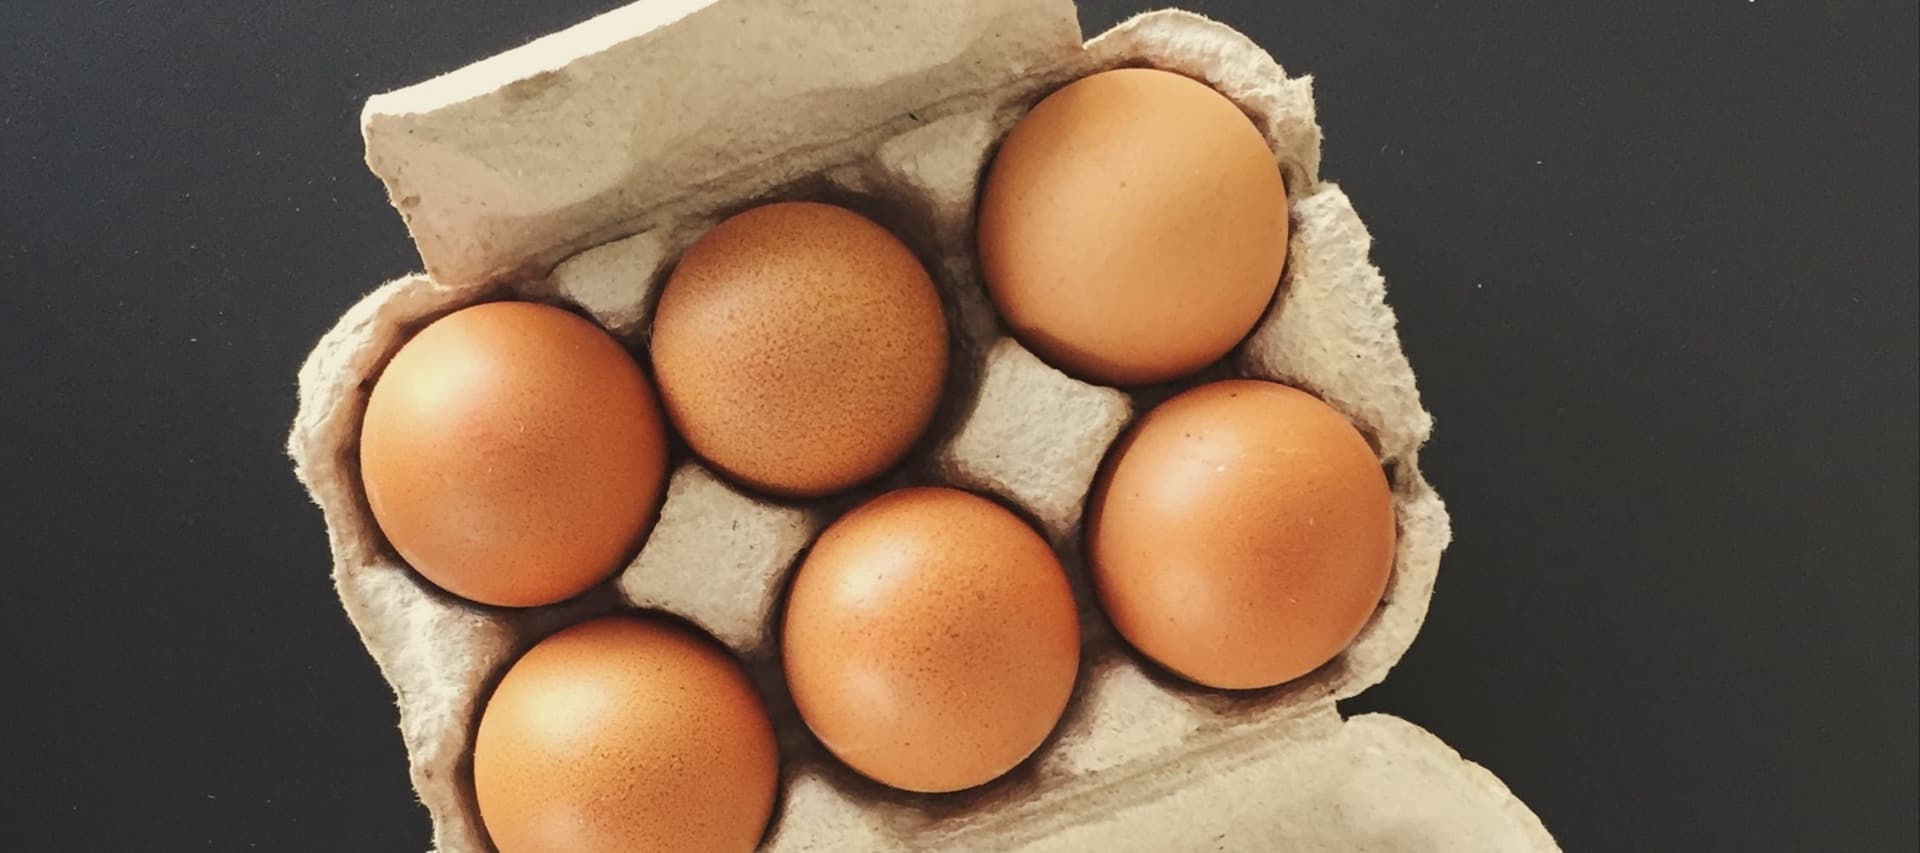 Фото новости: "ФАС возбудила дела против 12 производителей яиц"